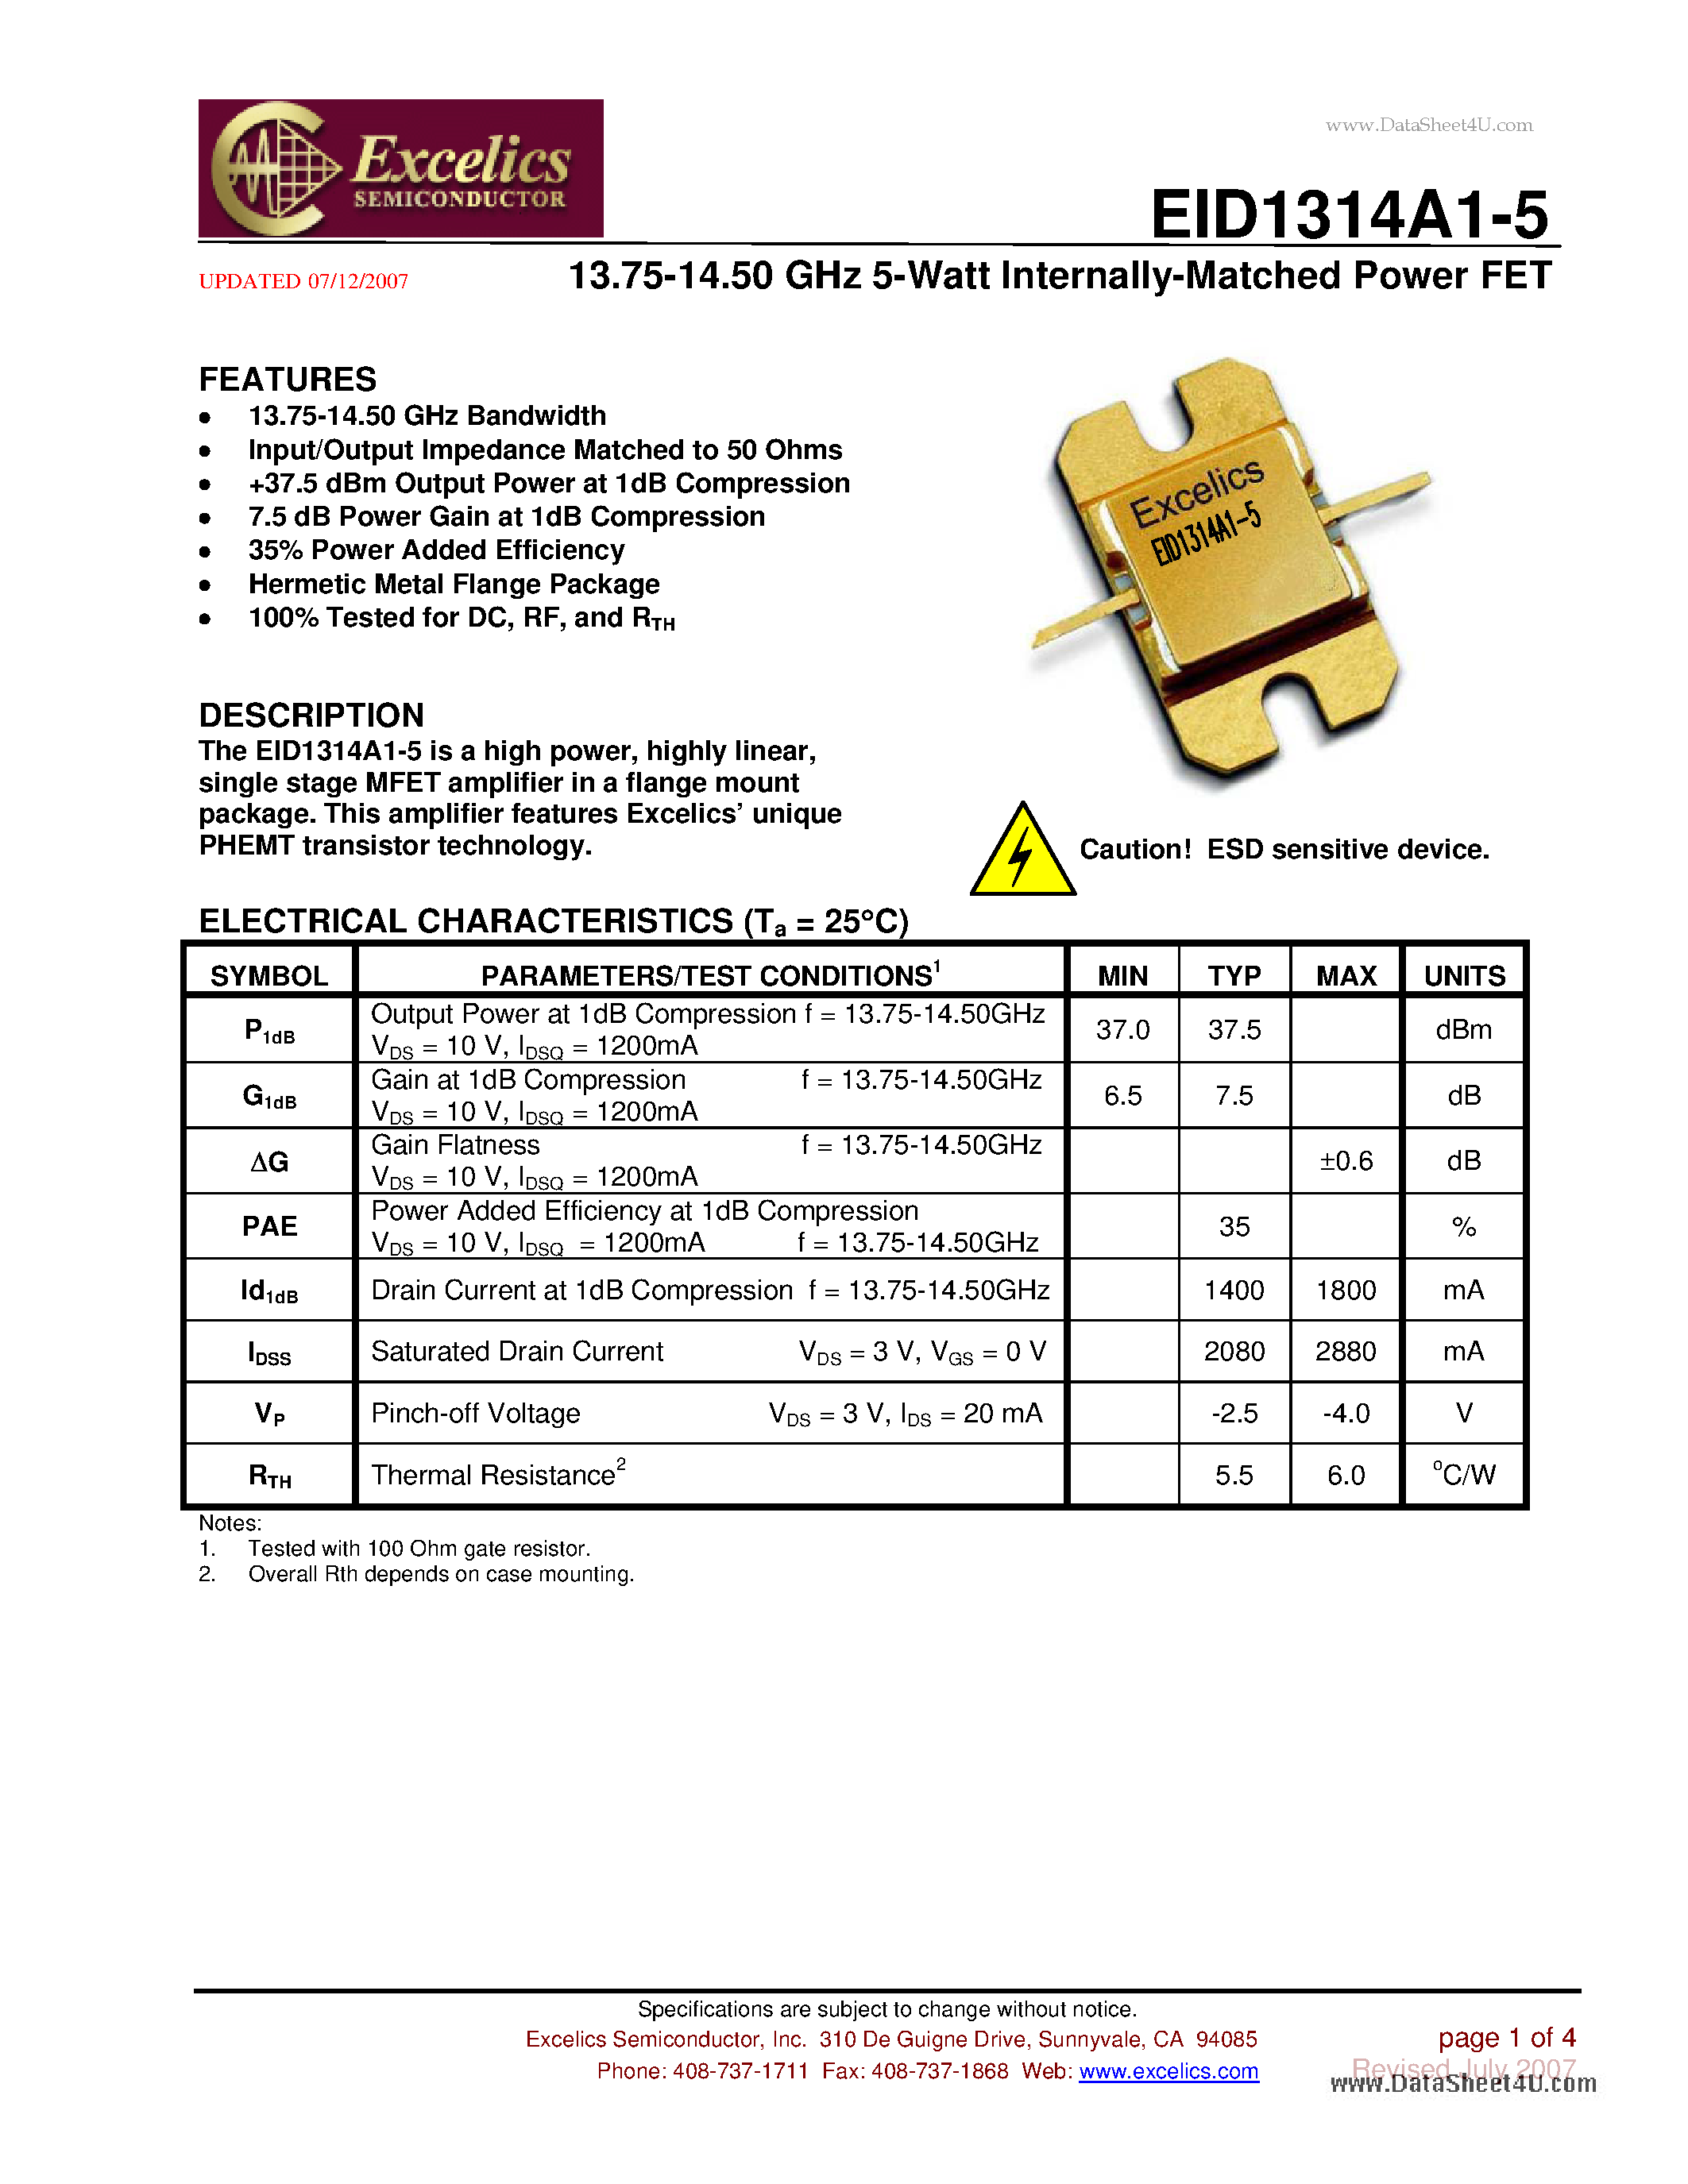 Даташит EID1314A1-5 - 13.75-14.50 GHz 5-Watt Internally-Matched Power FET страница 1